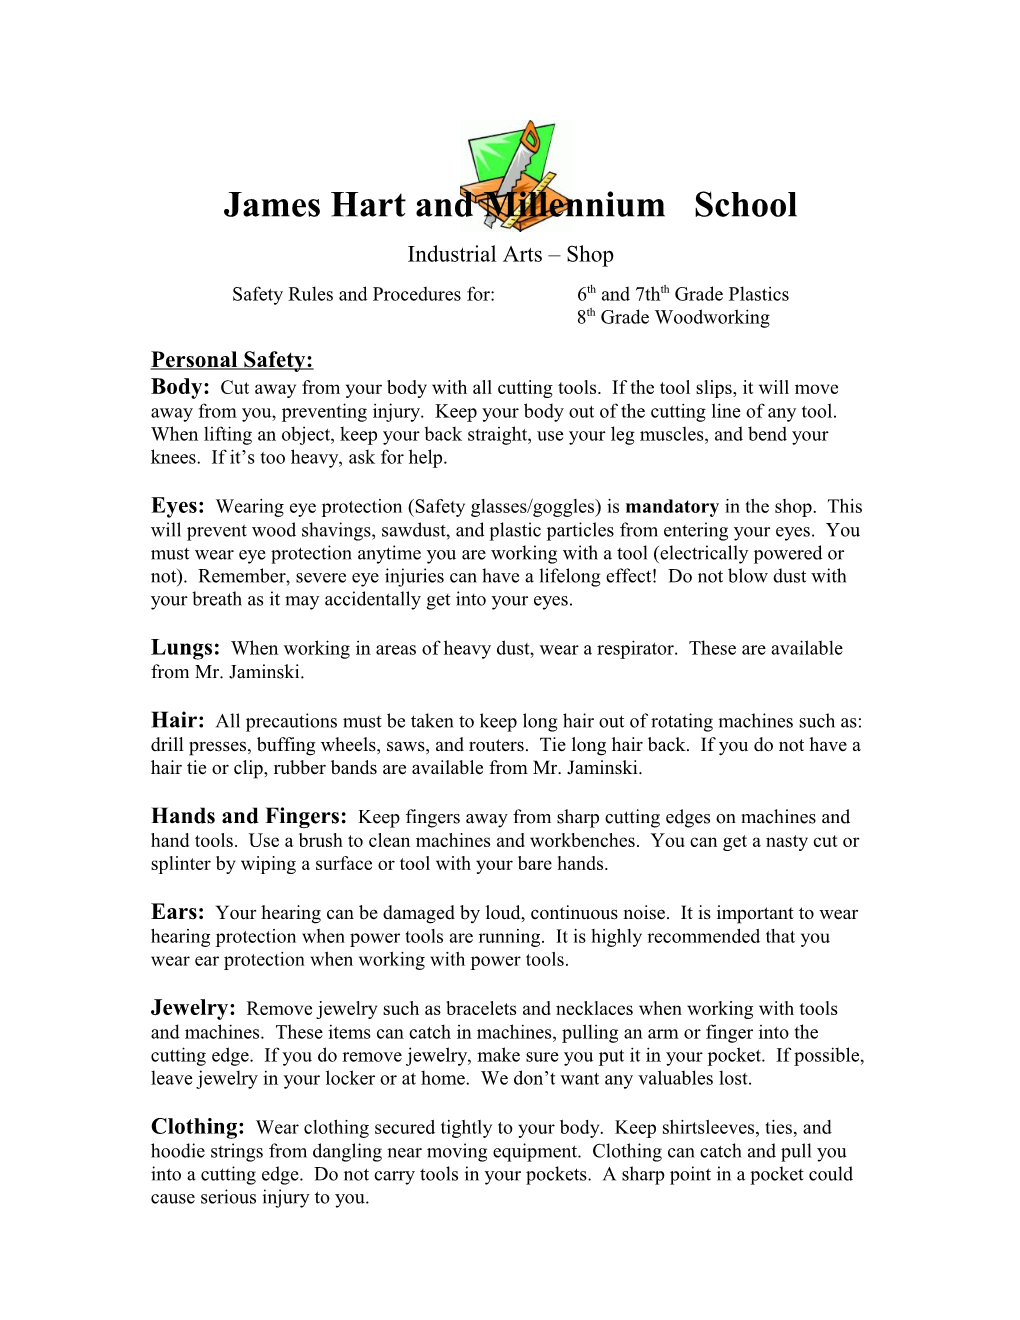 James Hart School